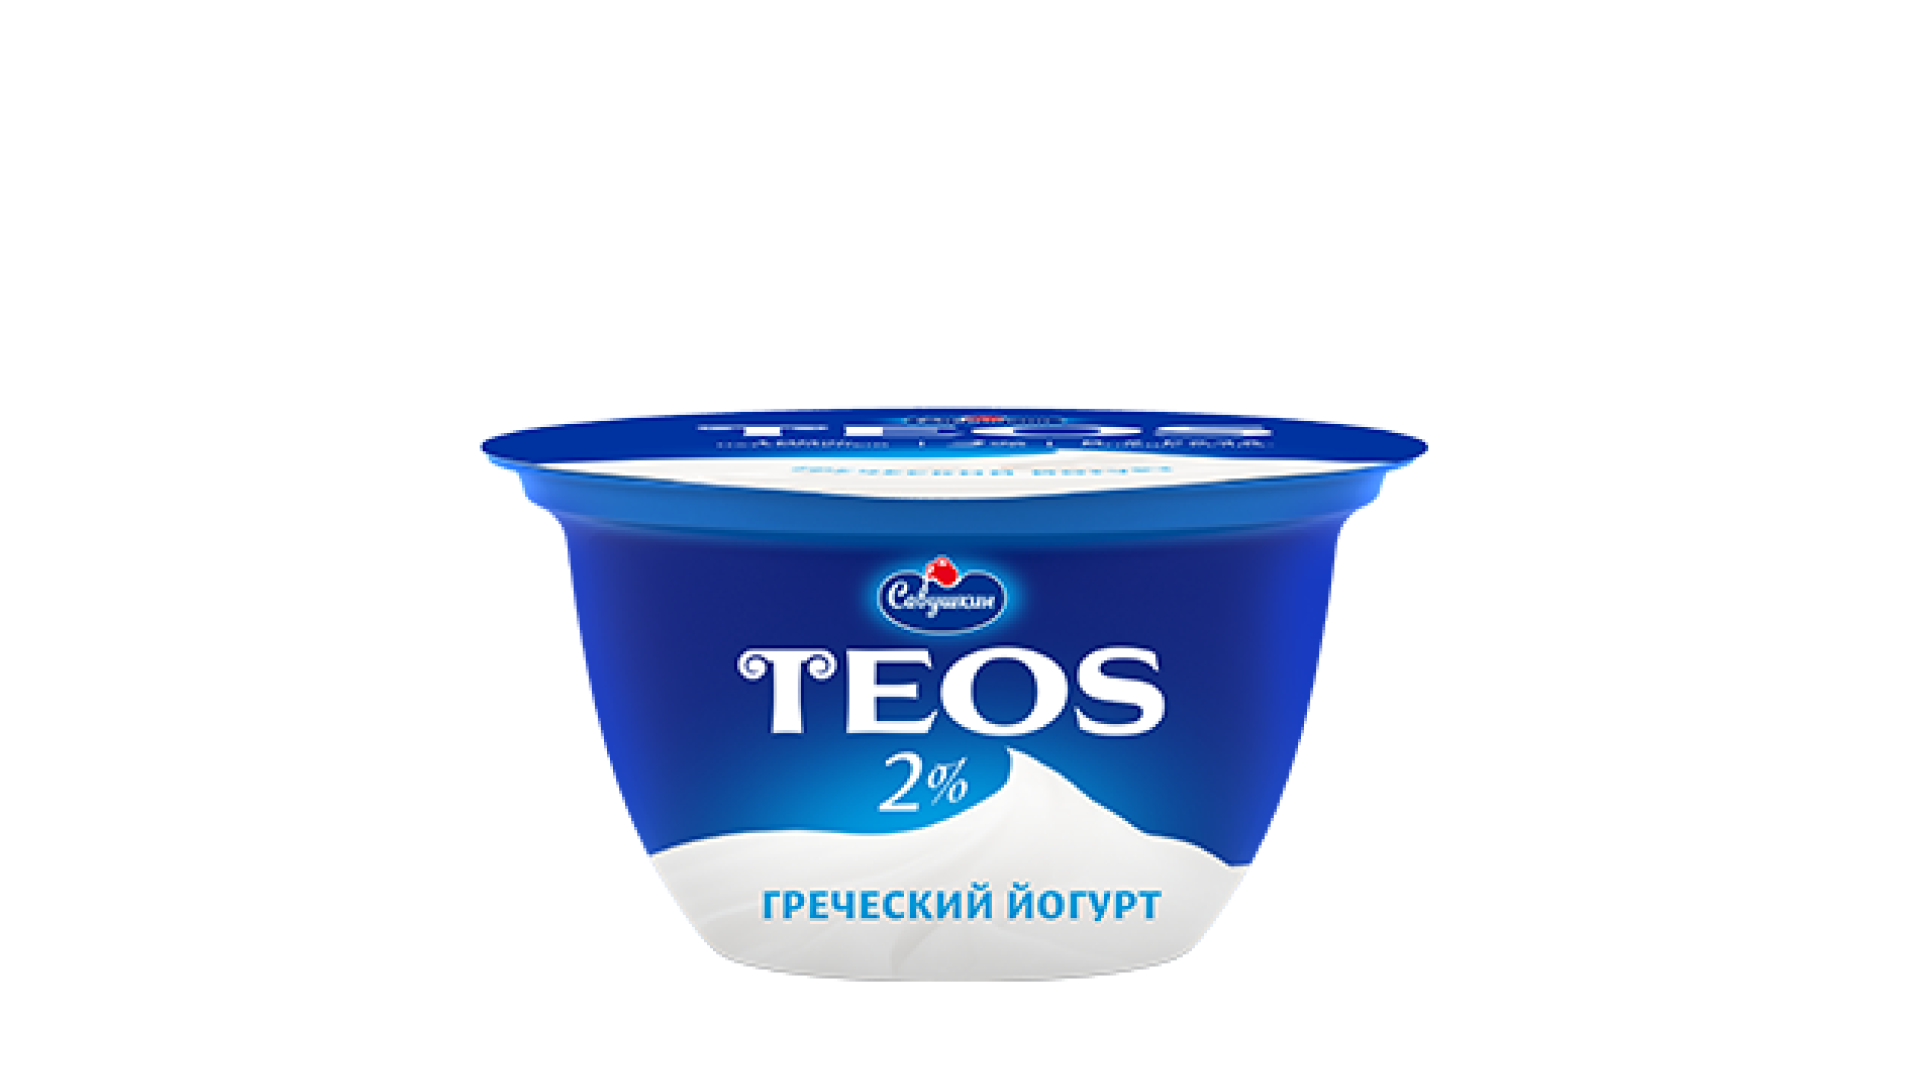 Теос питьевой. Йогурт греческий Teos 2% 140г.. Йогурт греческий Теос 140 грамм. Йогурт Теос греческий натуральный. Йогурт греческий Савушкин продукт.